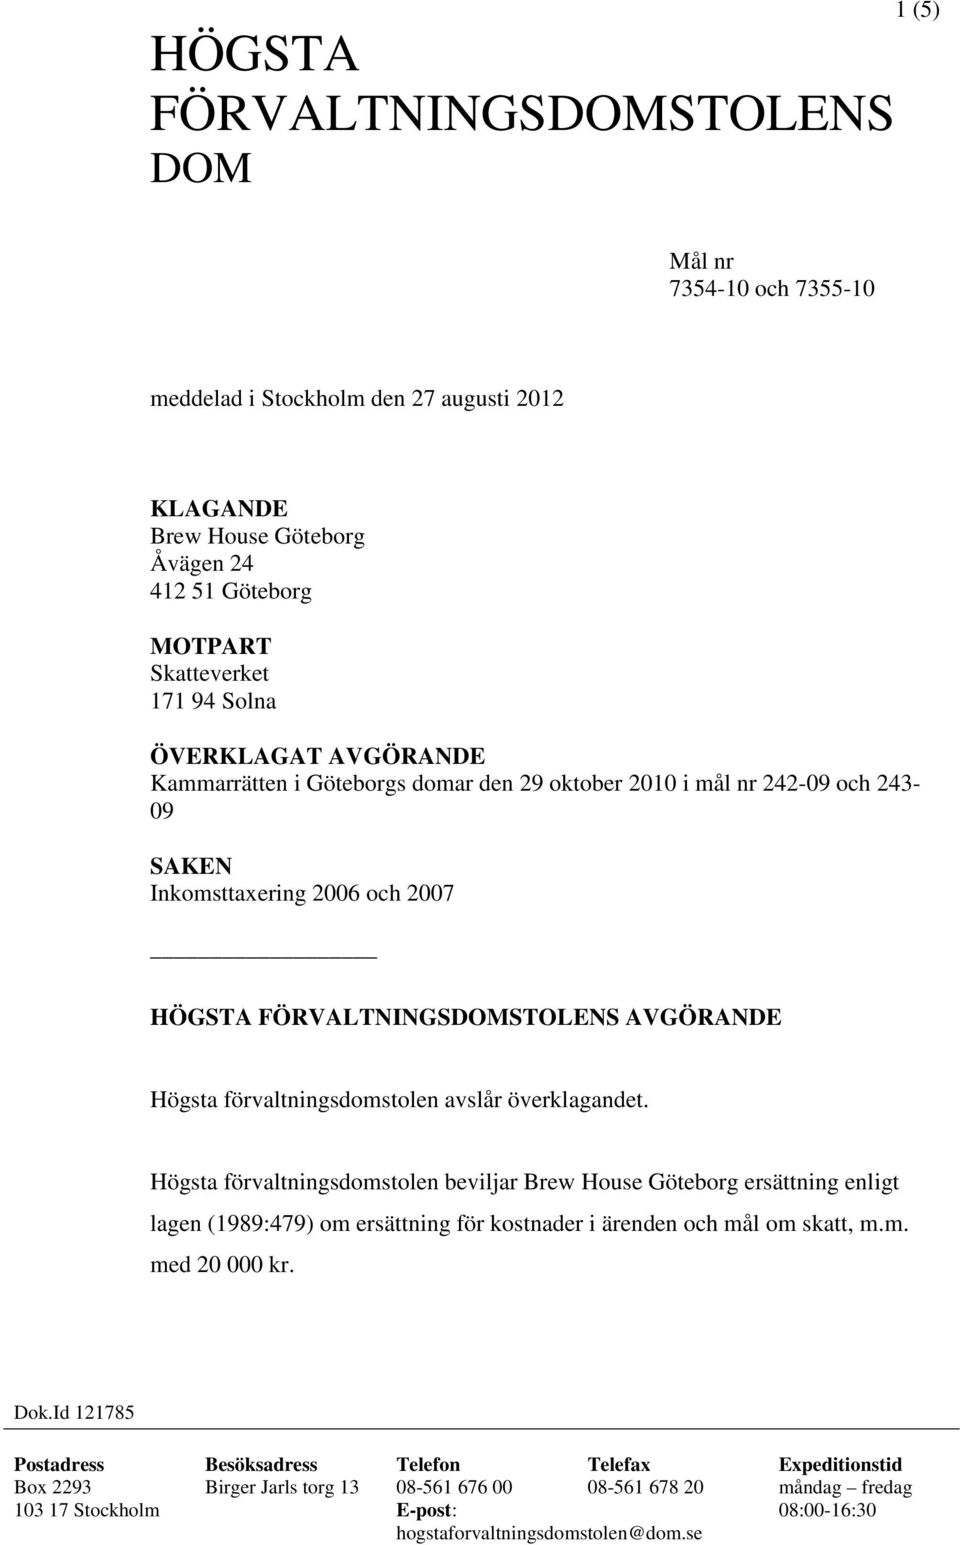 överklagandet. Högsta förvaltningsdomstolen beviljar Brew House Göteborg ersättning enligt lagen (1989:479) om ersättning för kostnader i ärenden och mål om skatt, m.m. med 20 000 kr. Dok.